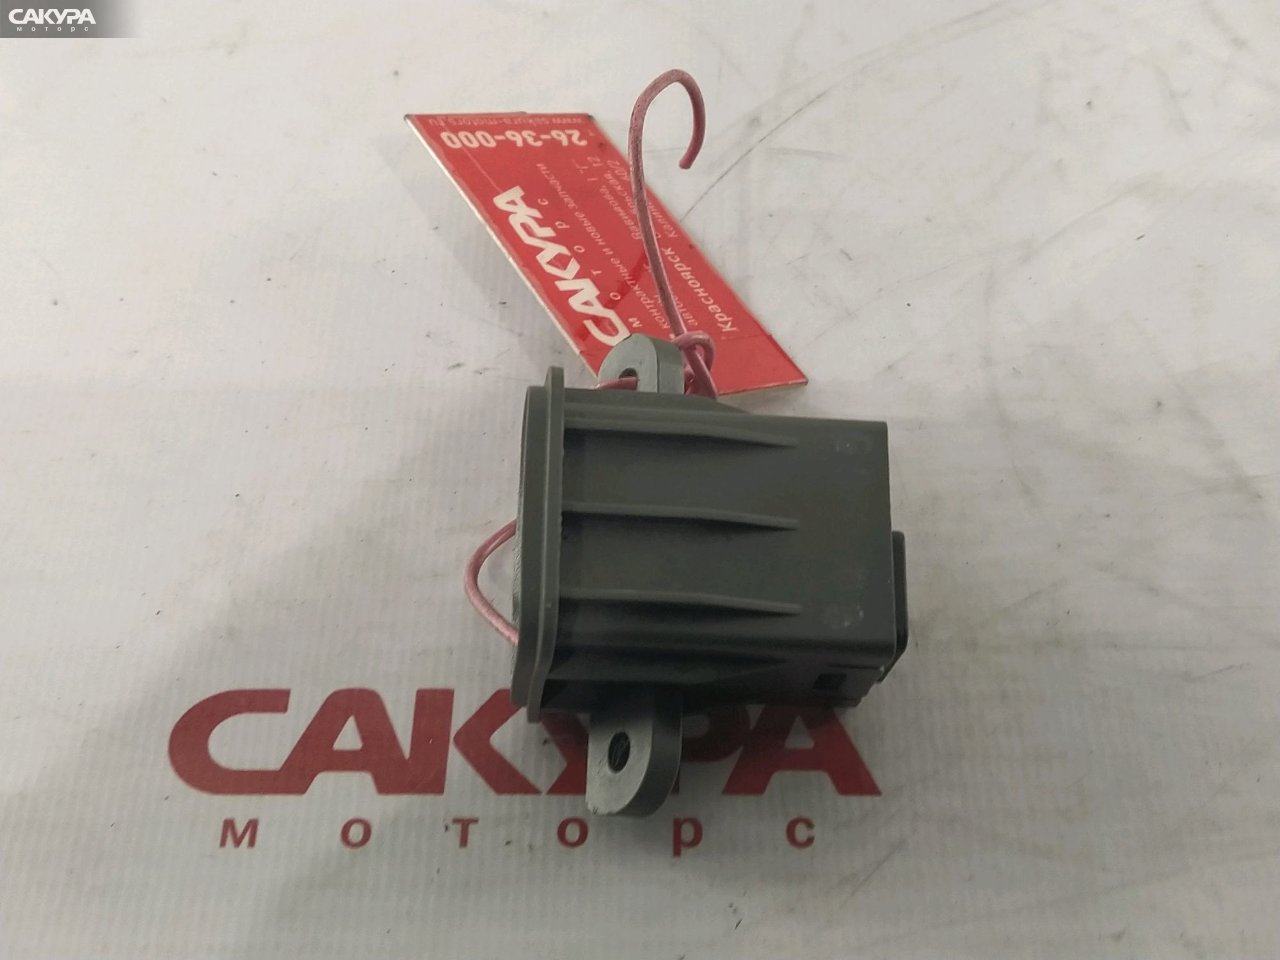 Кнопка открывания багажника Honda CR-V RD1 B20B: купить в Сакура Красноярск.